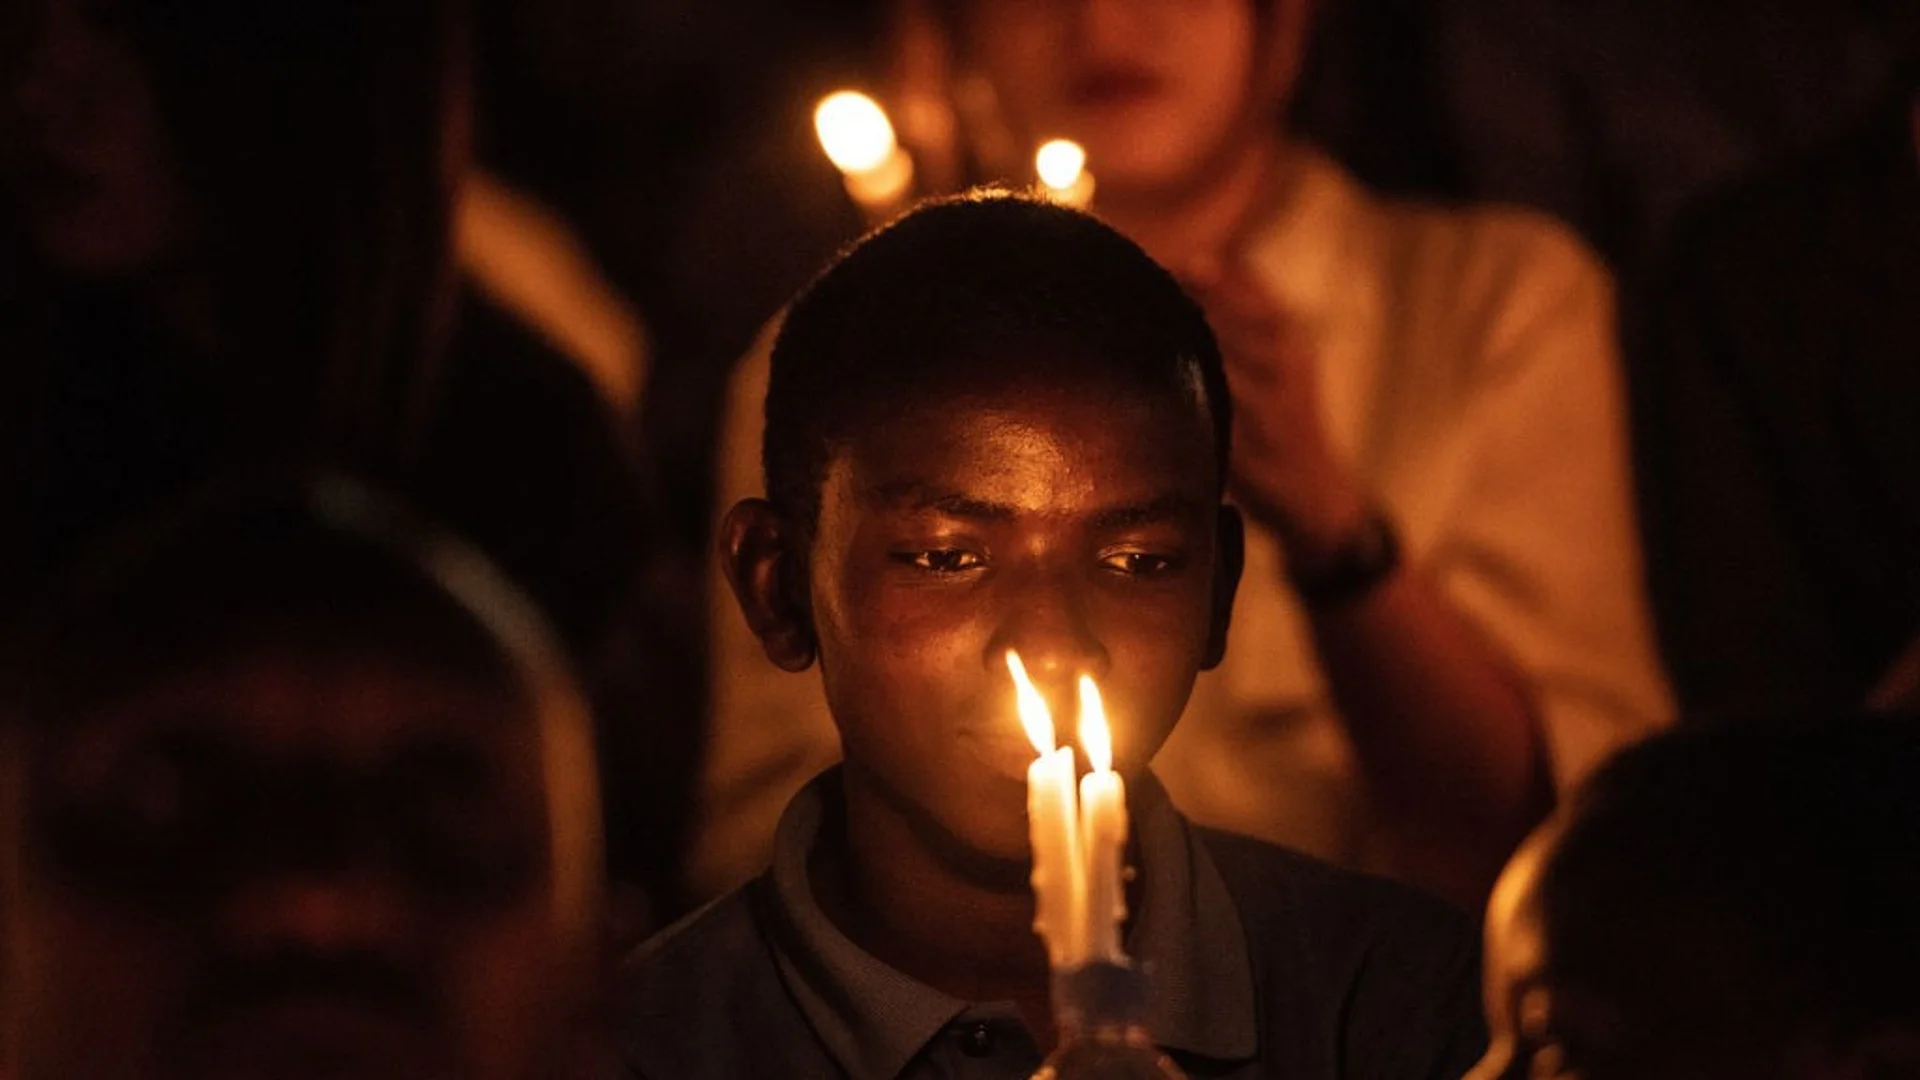 30 години от геноцида в Руанда: кой пося семето на омразата?